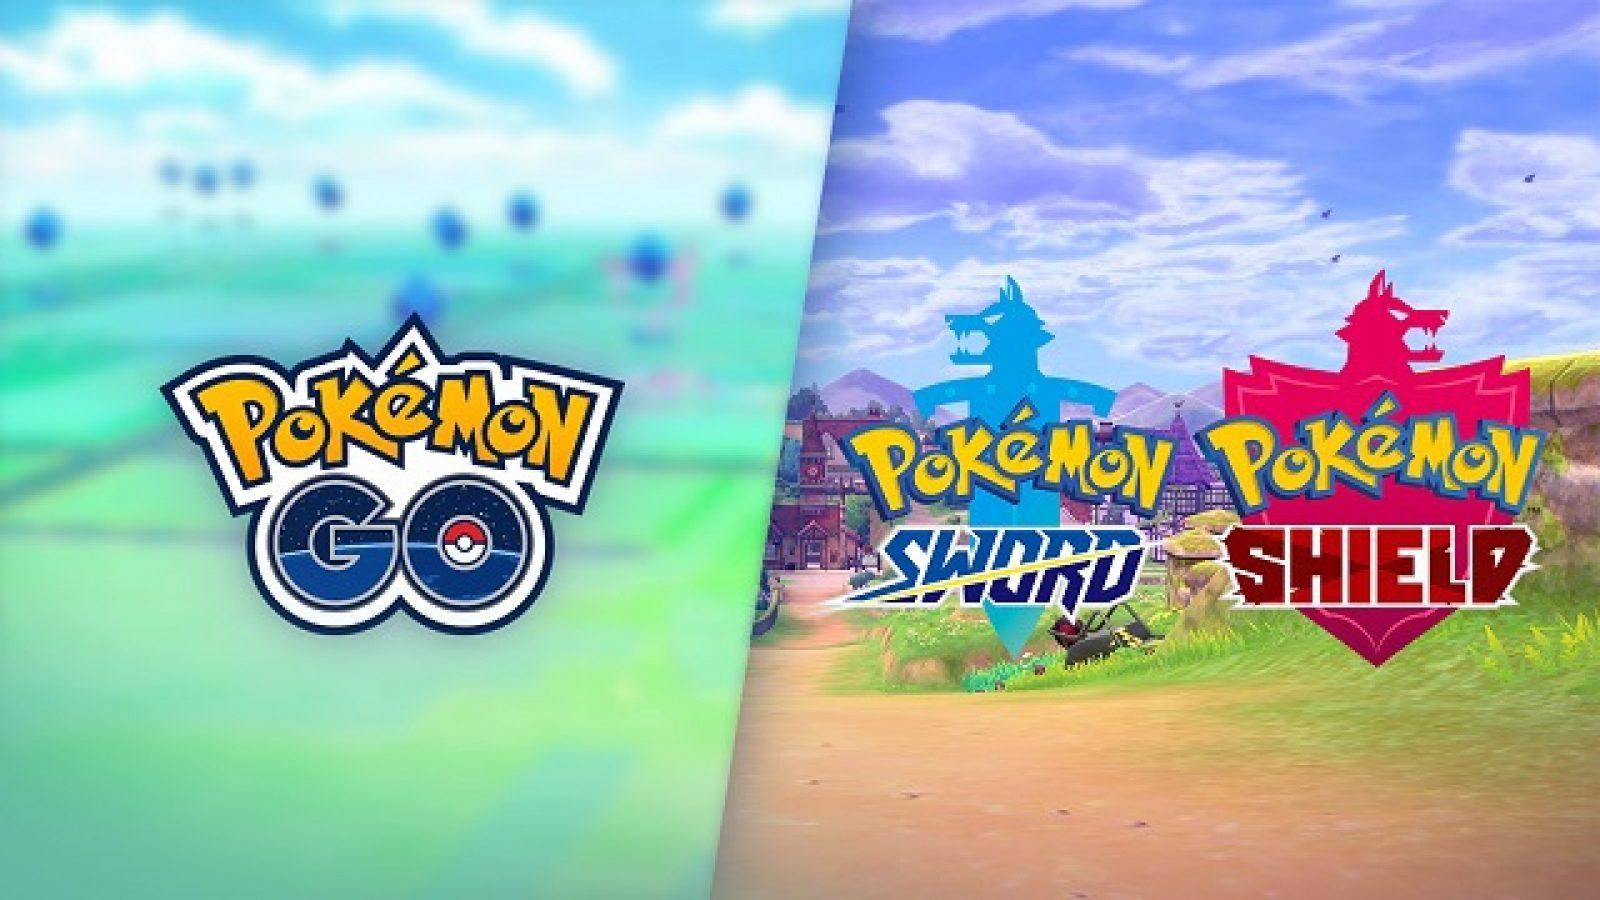 Pokémon Go / Pokémon SW/SH